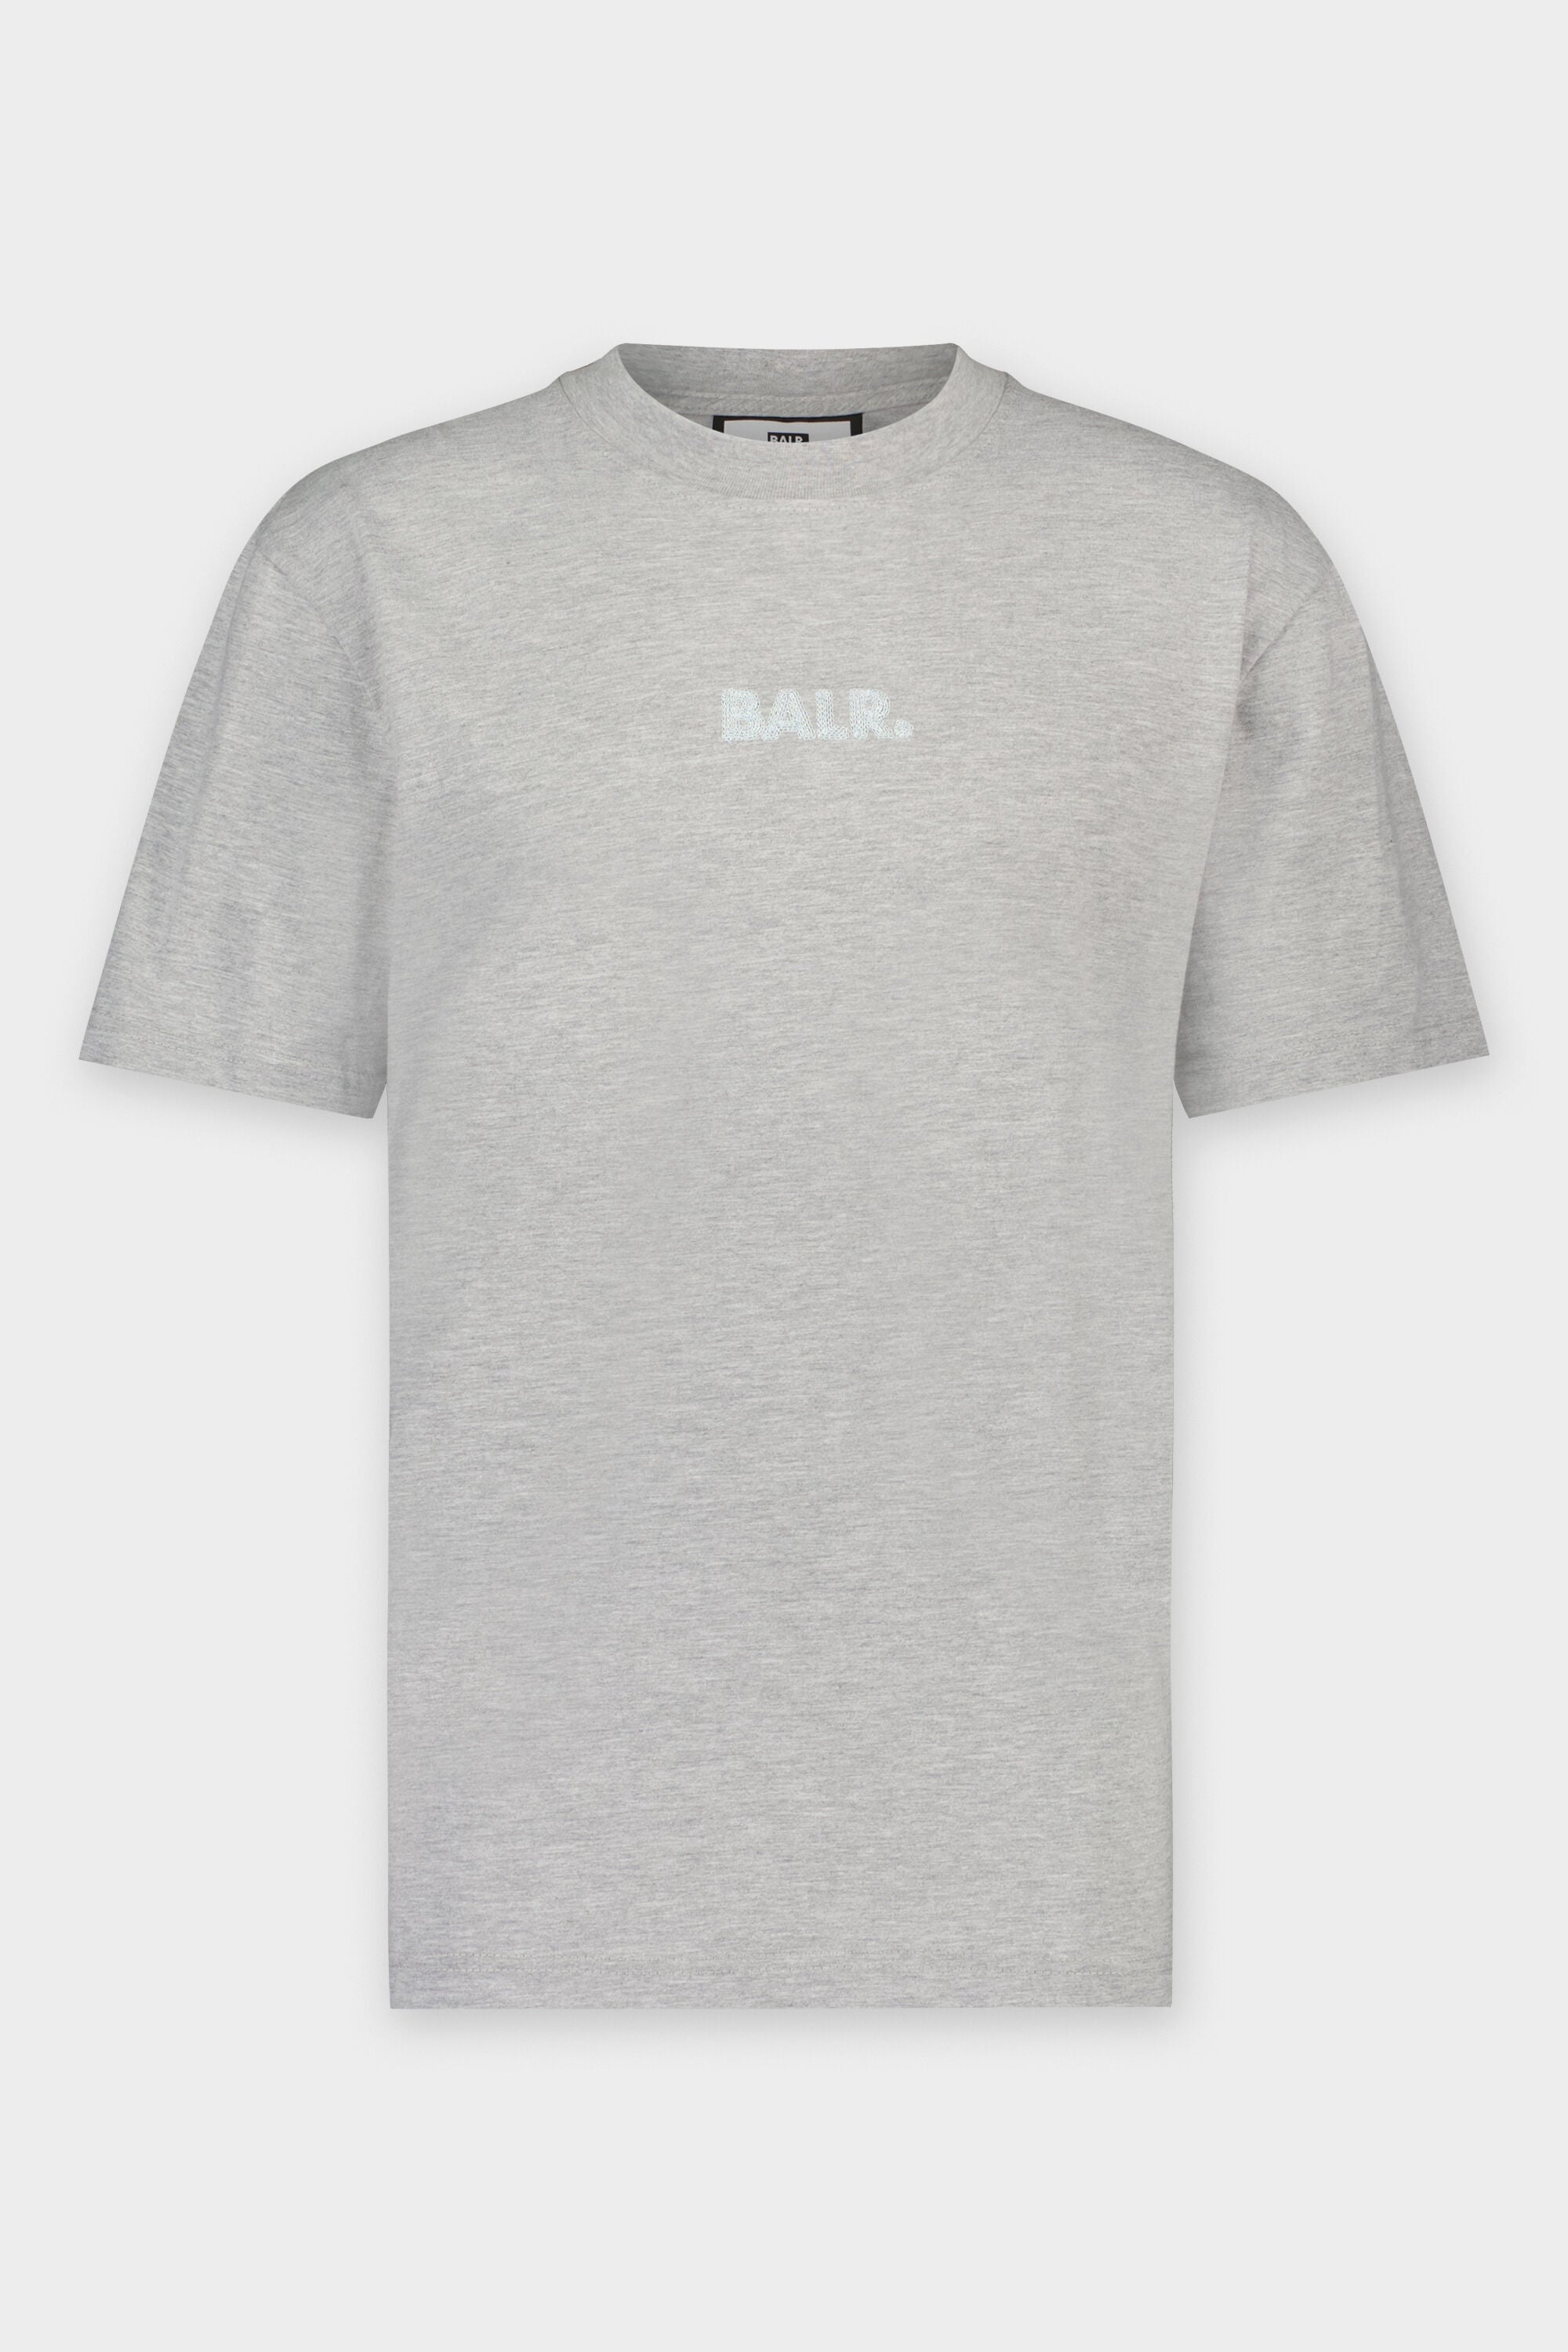 Olaf Straight Felt Badge Logo T-Shirt Grey Heather – BALR.